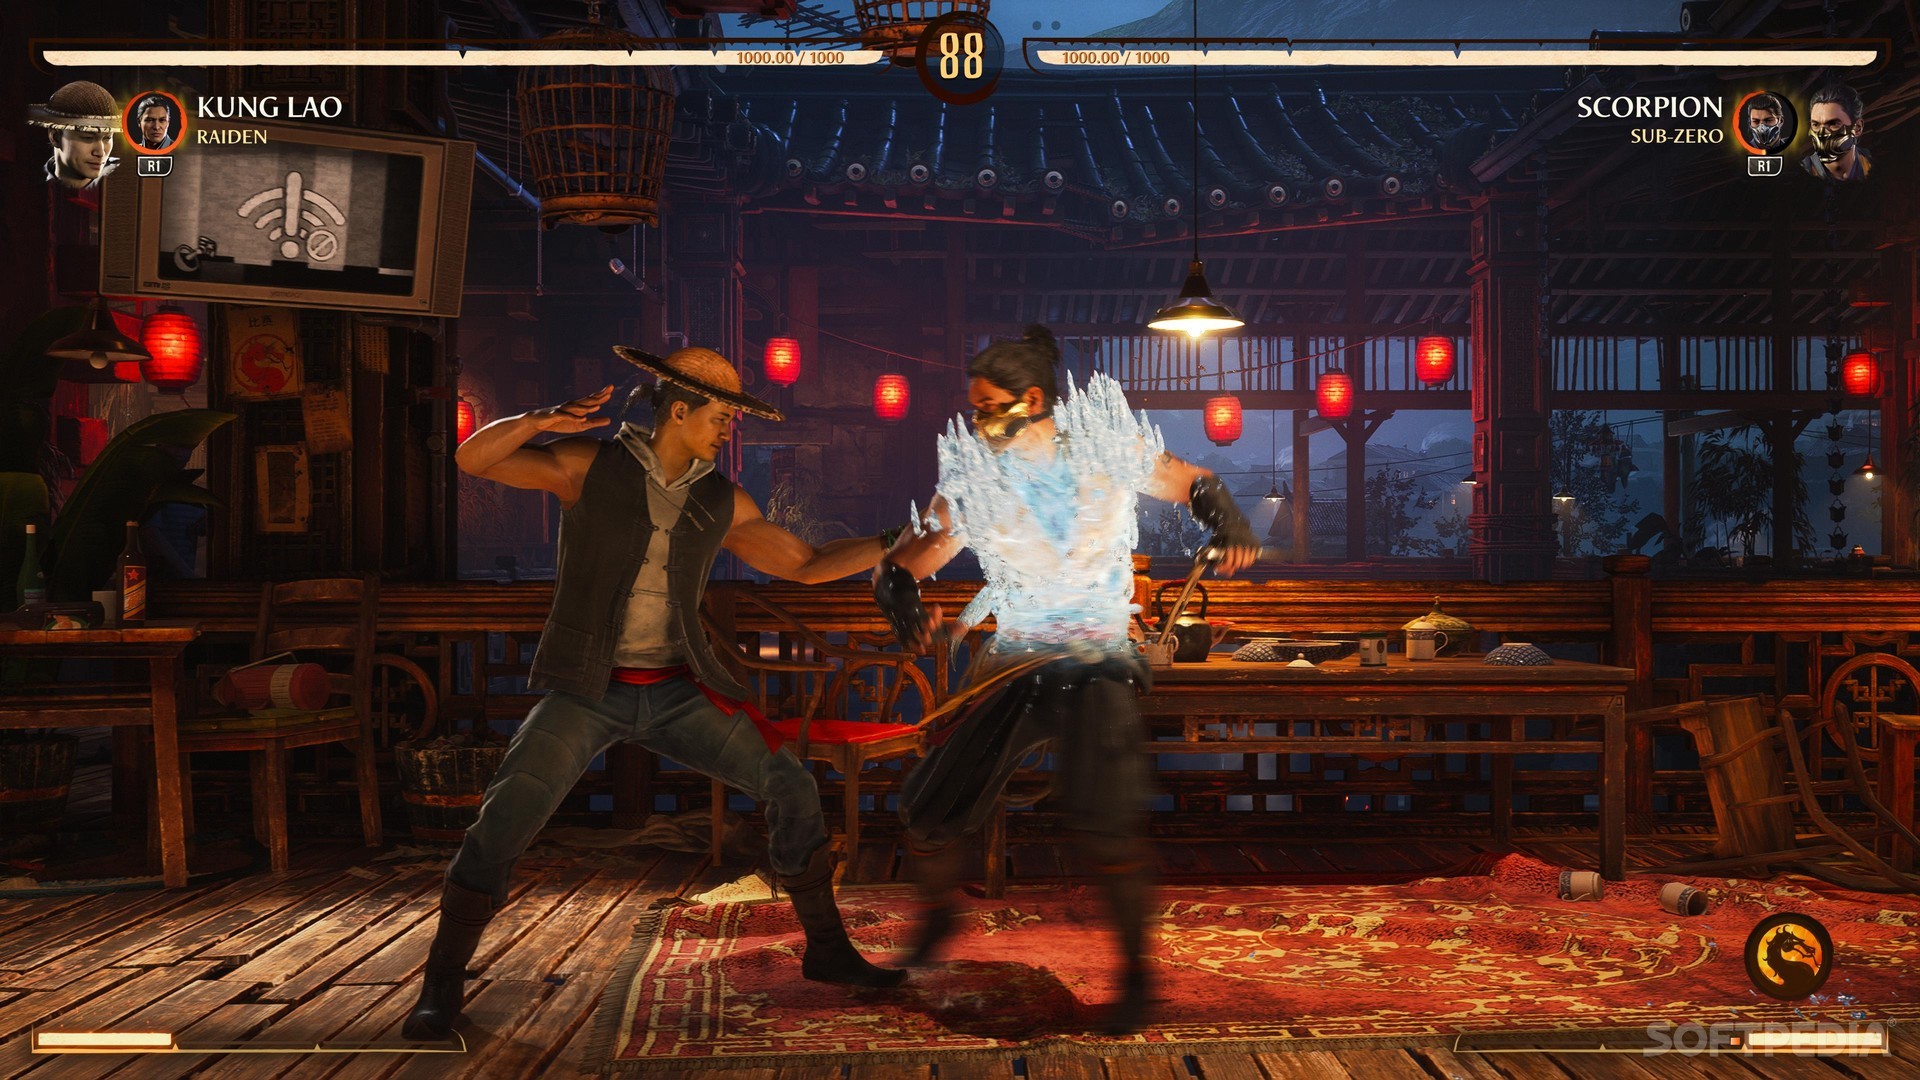 Game review: Mortal Kombat 1 (PS5)